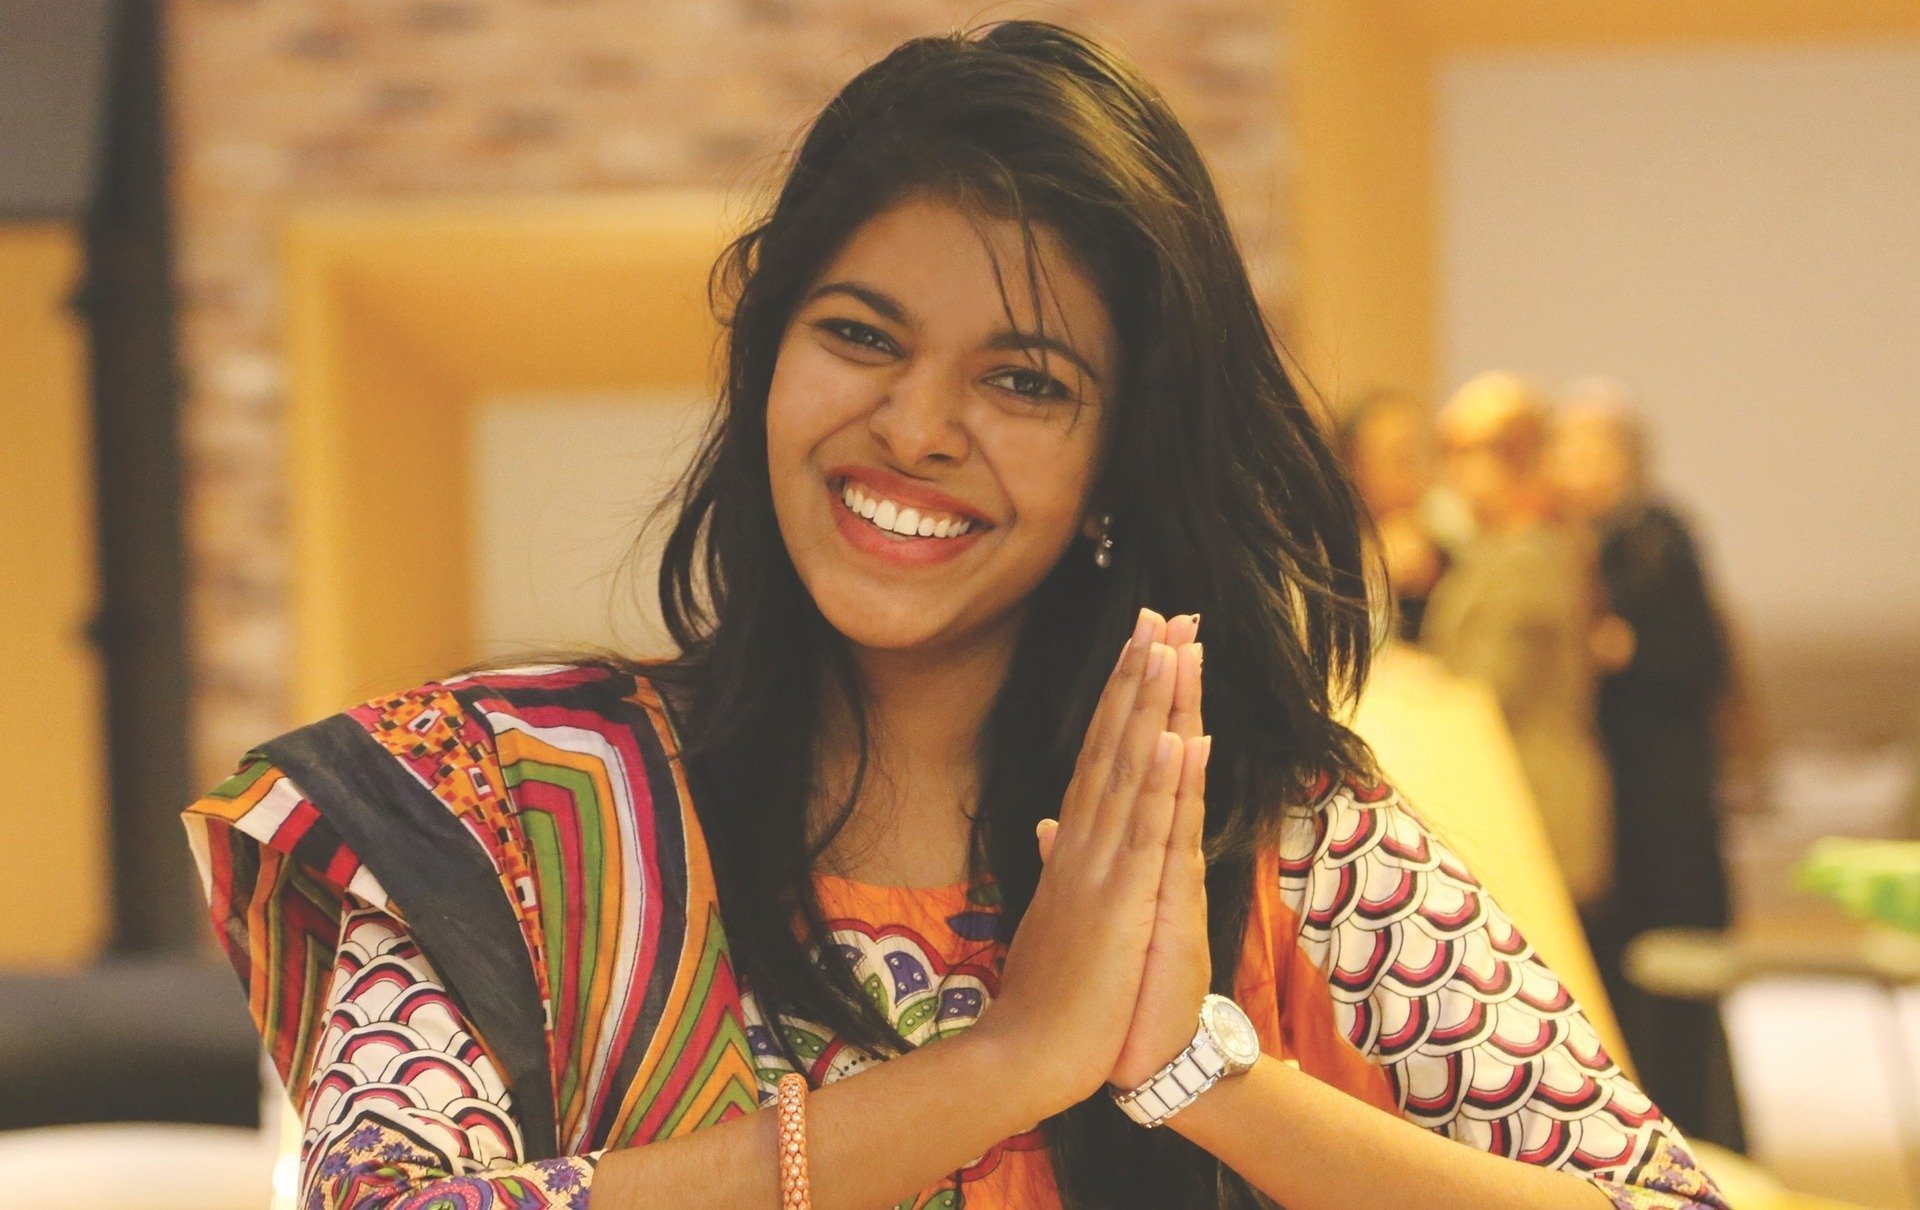 Mulher vestindo roupas indianas, sorrindo, com as mãos dadas